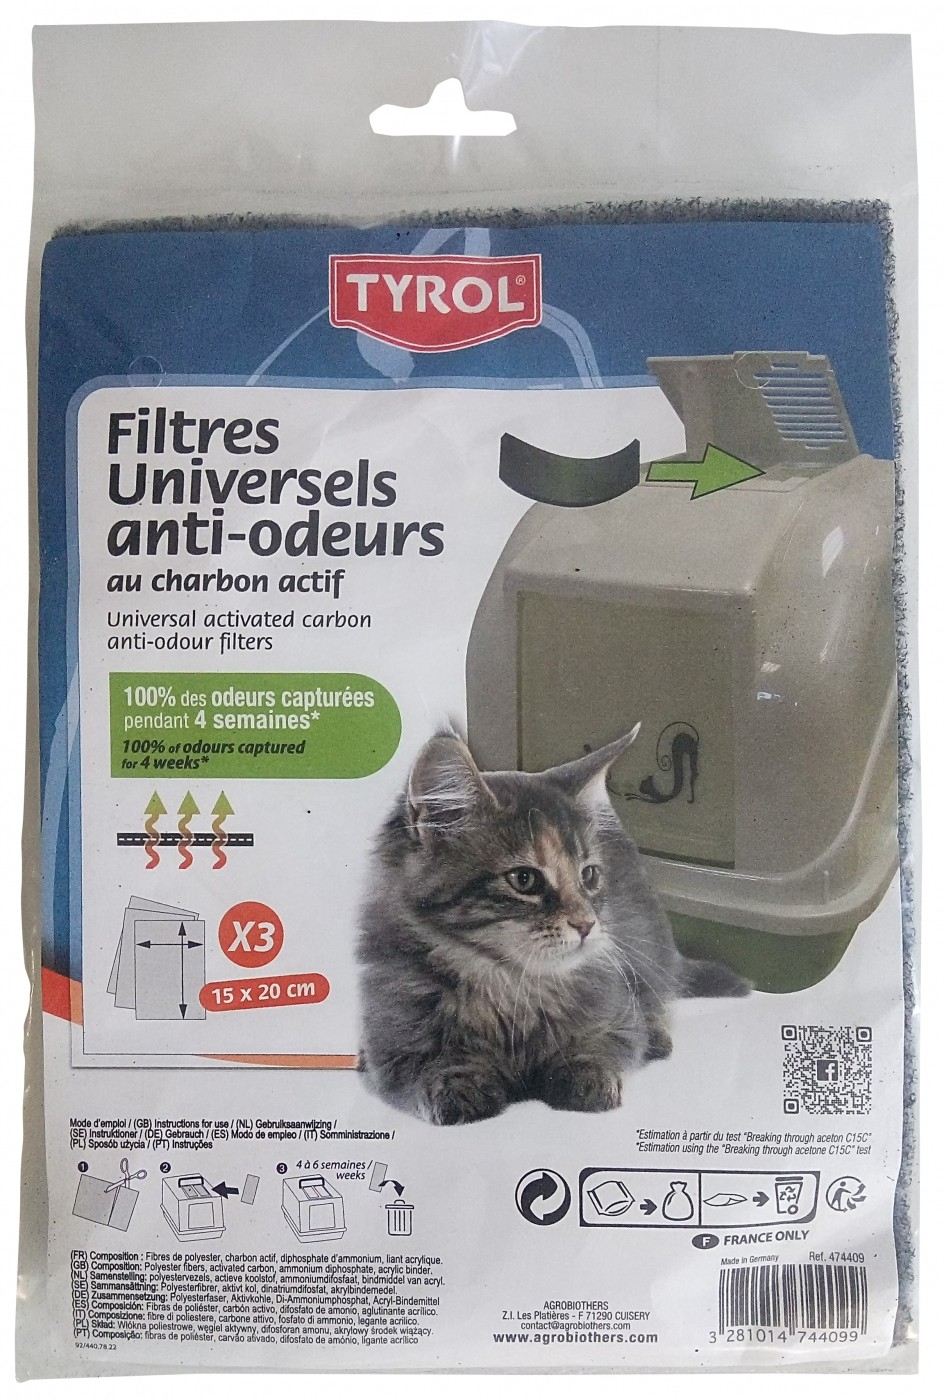 Antigeur filters met actief kool voor gesloten kattenbakken